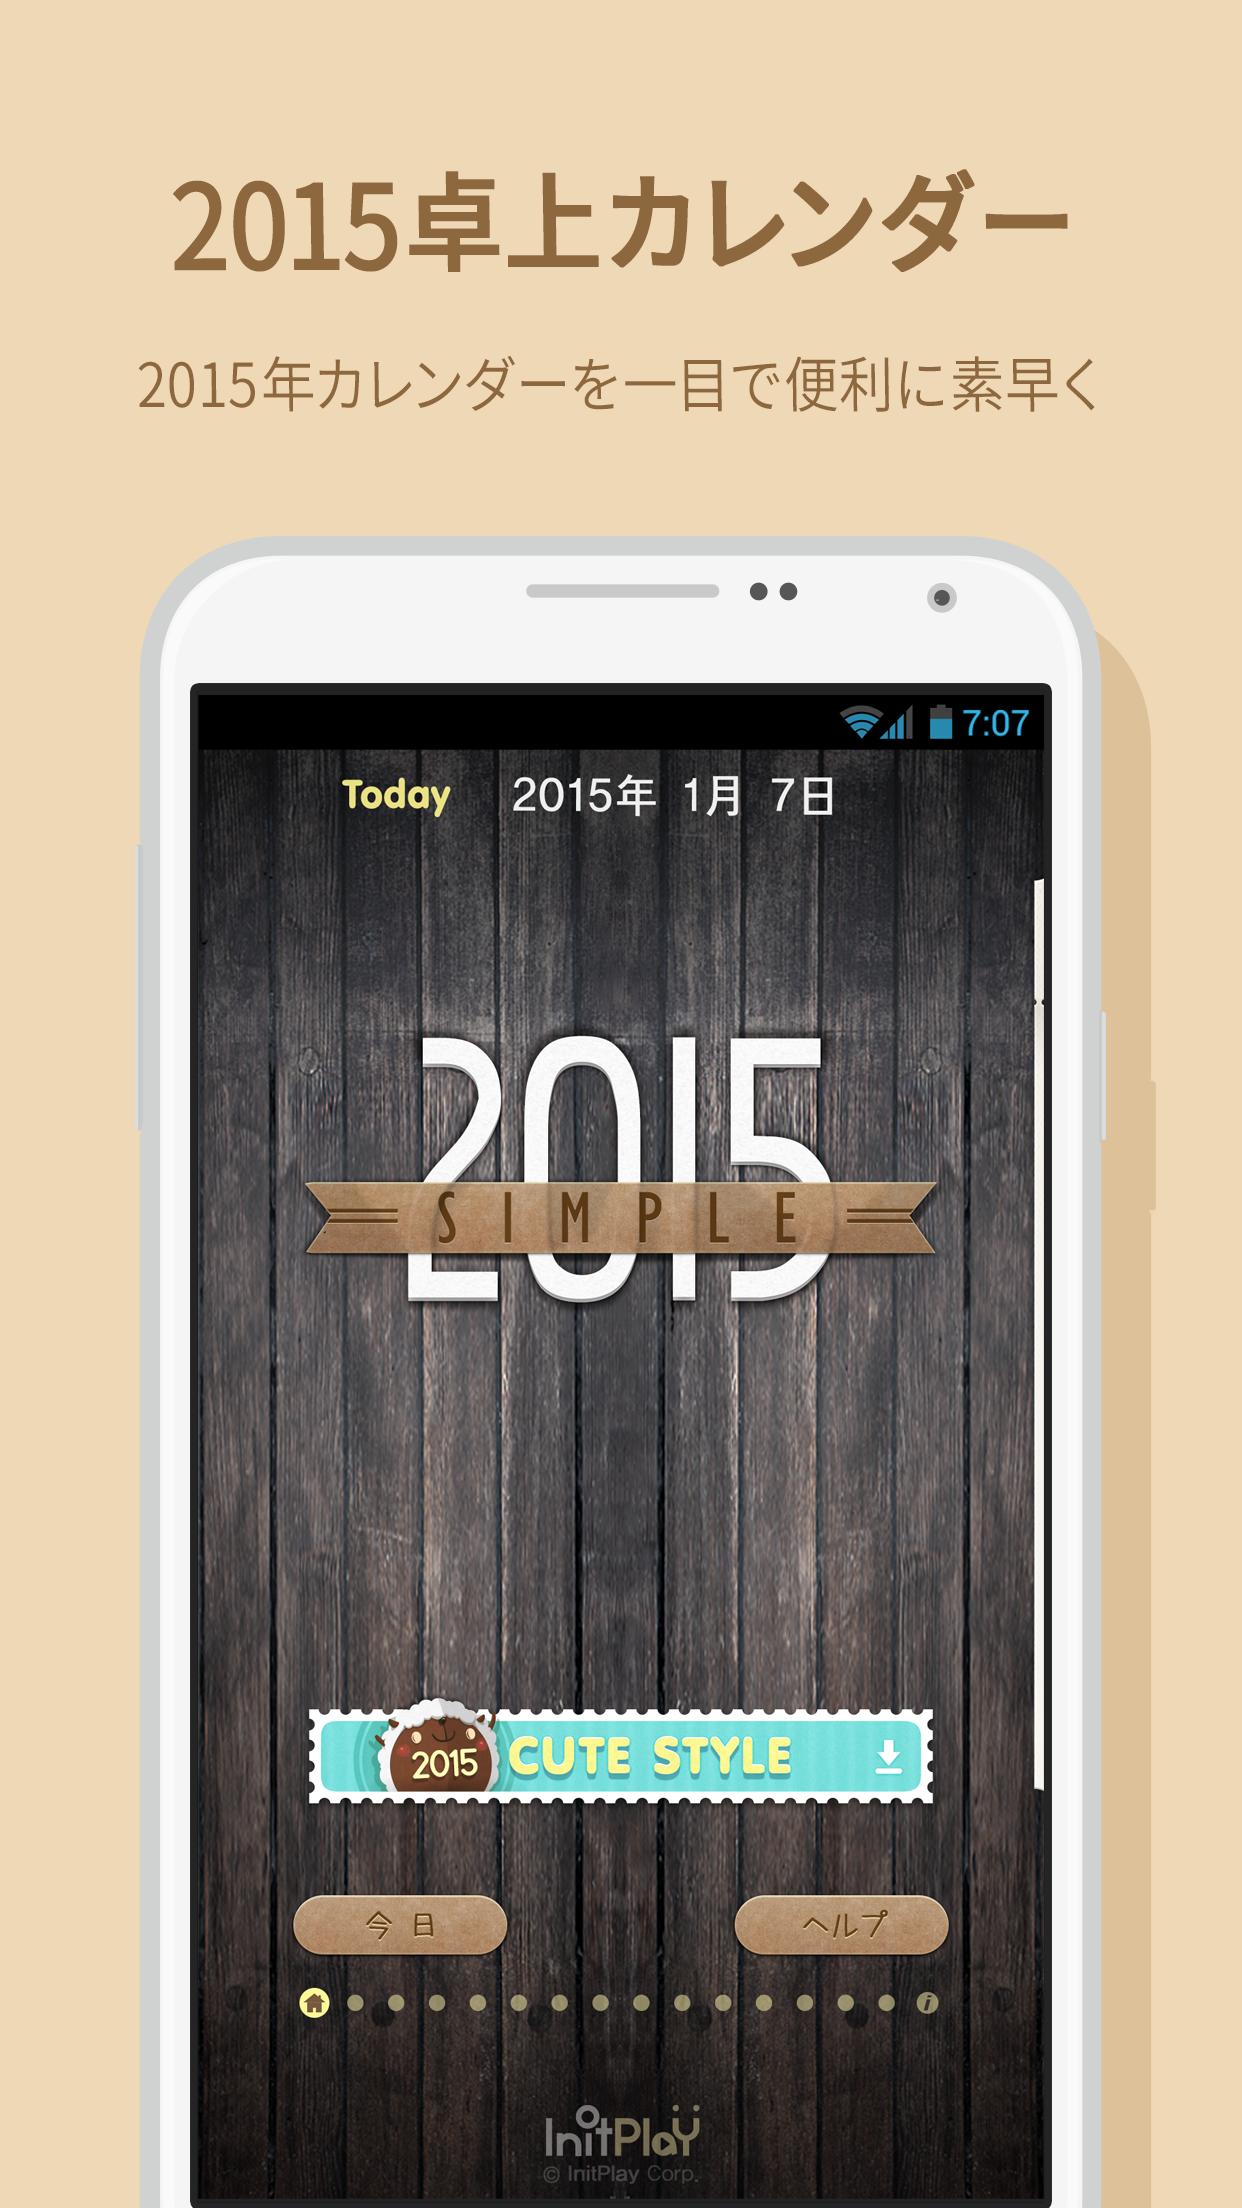 卓上カレンダー2015 For Android Apk Download